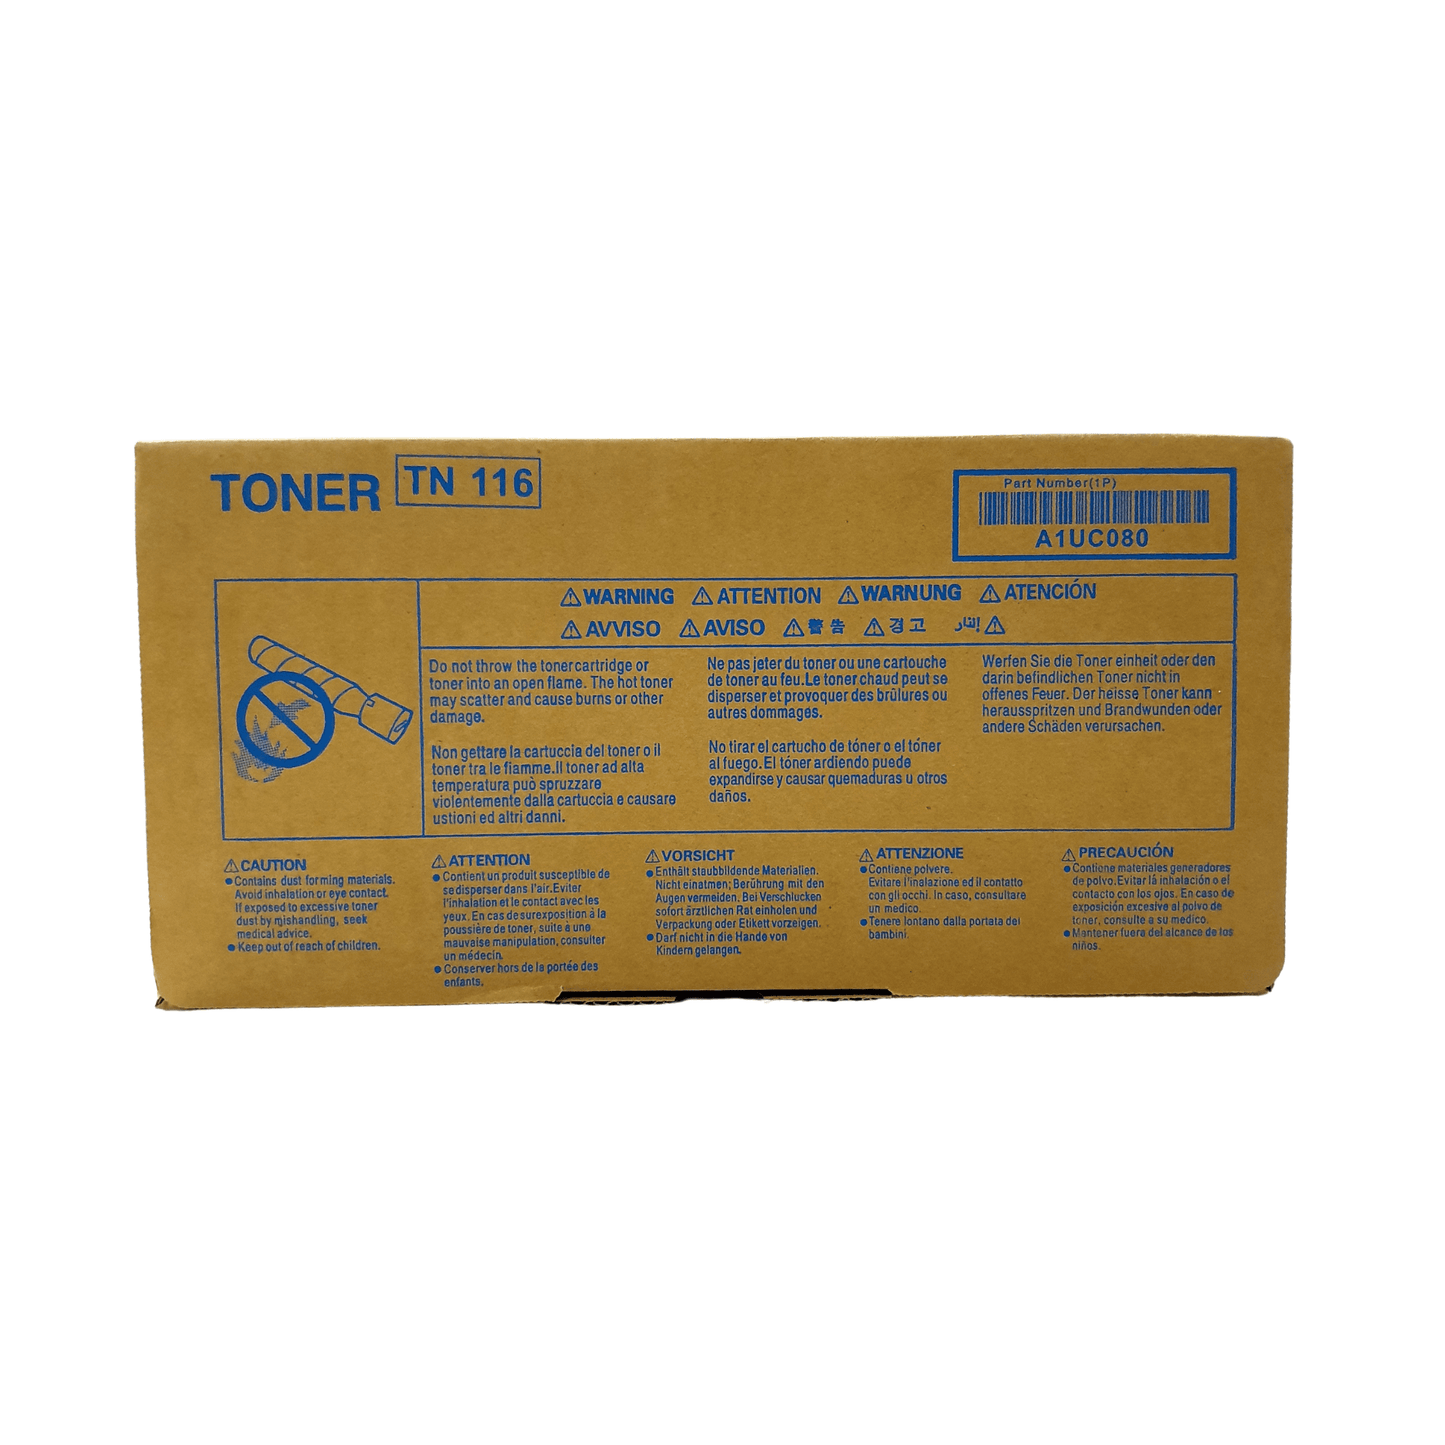 Konica Minolta Toner Cartridge TN 116 - 𝐏𝐑𝐄𝐌𝐈𝐄𝐑 𝐓𝐑𝐀𝐃𝐄𝐑𝐒